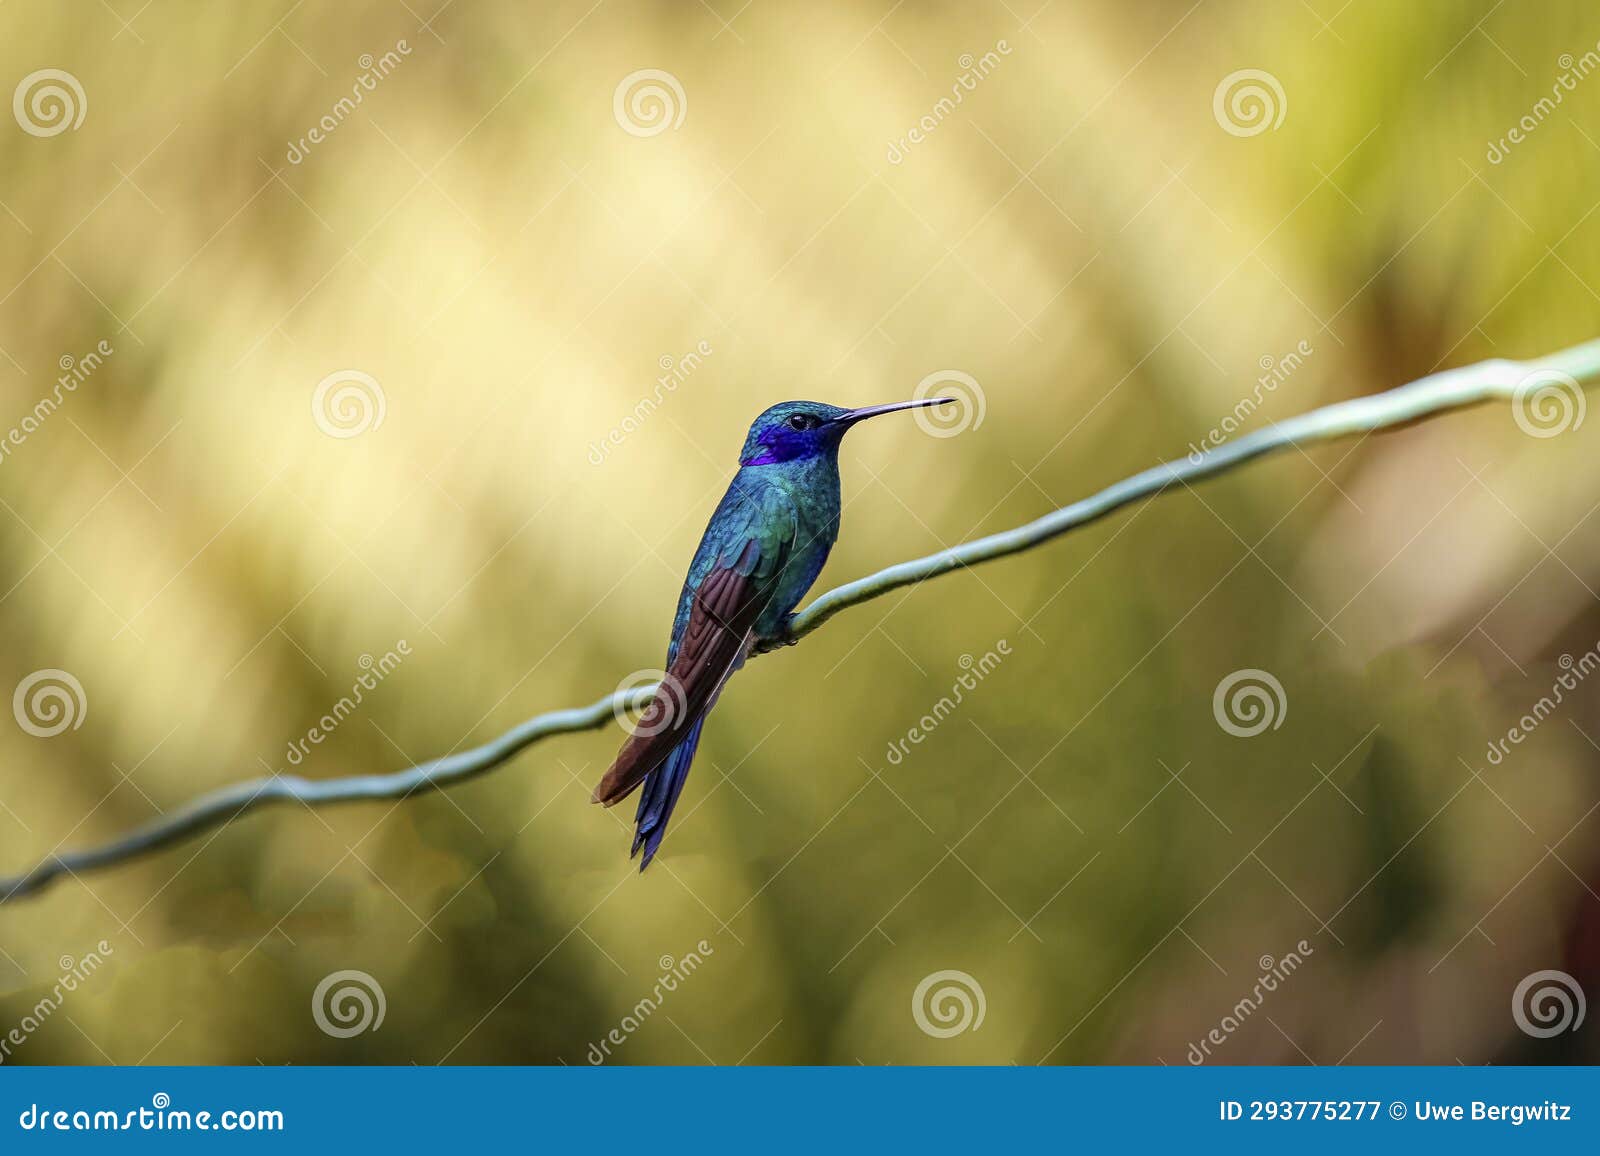 sparkling violetear (colibri coruscans), rogitama biodiversidad, colombia